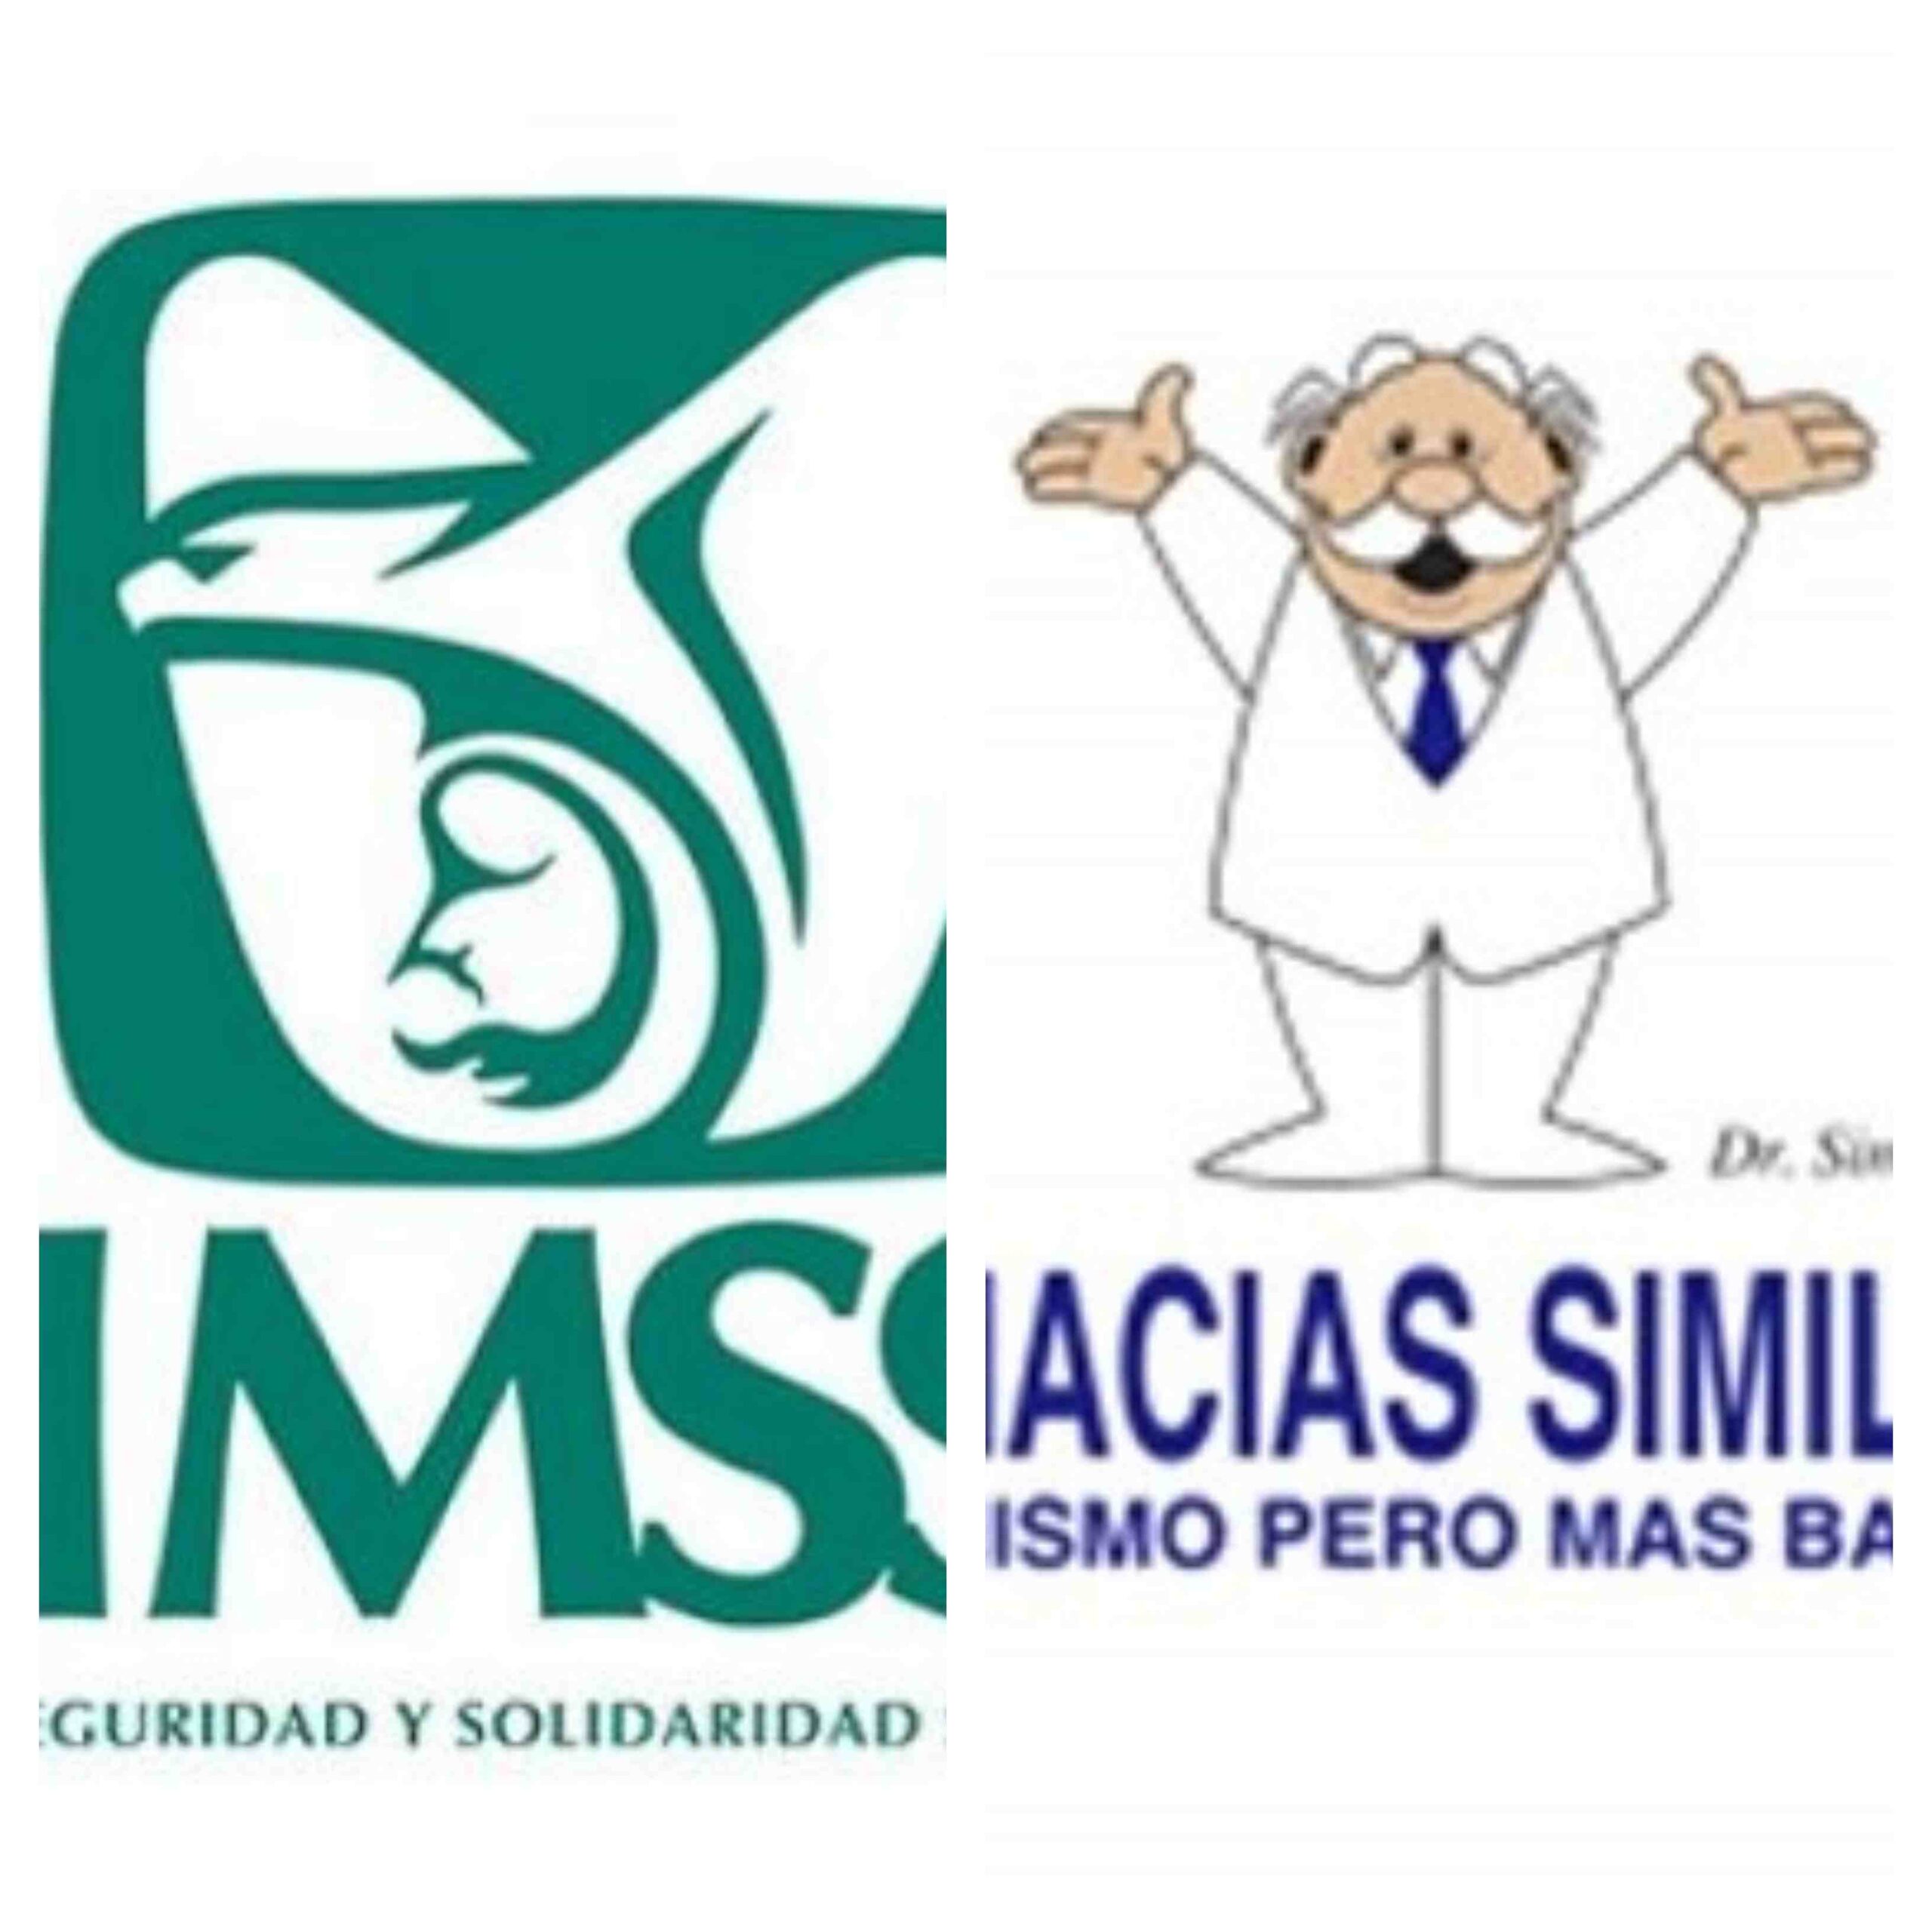 Consulta en el IMSS y en Farmacias Similares: ¿son iguales?